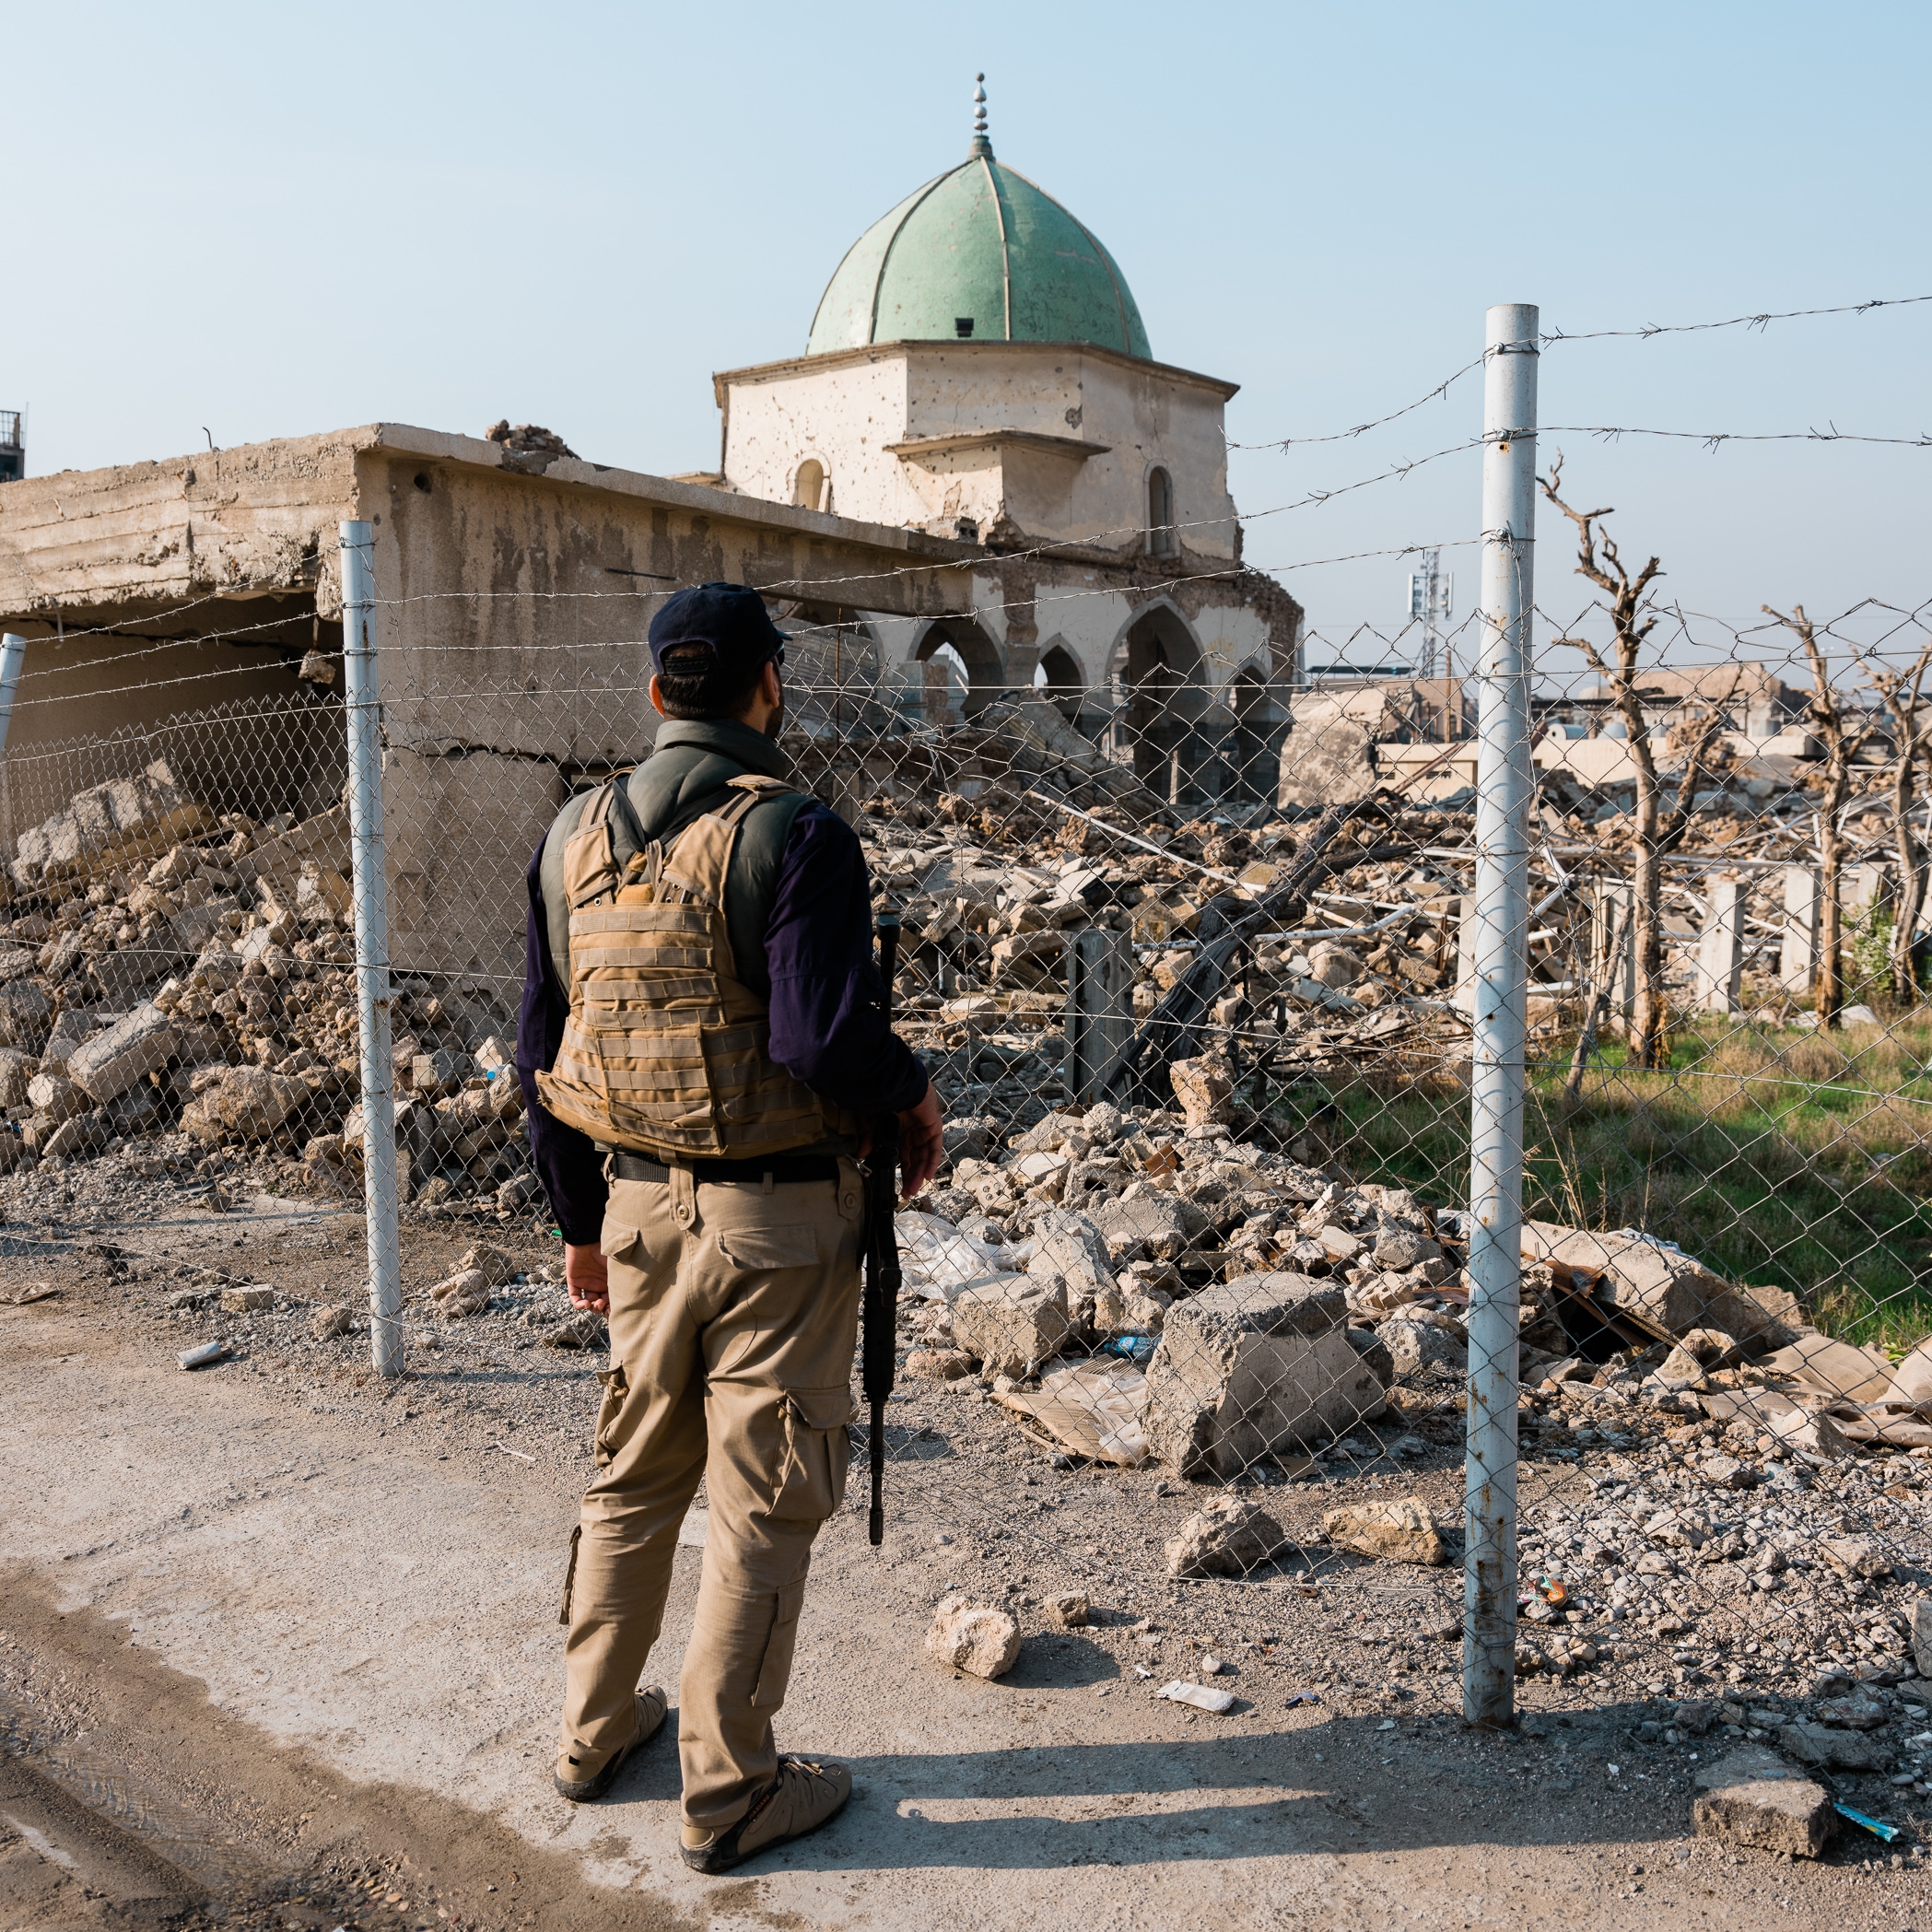 Security guard in Mosul, Iraq.